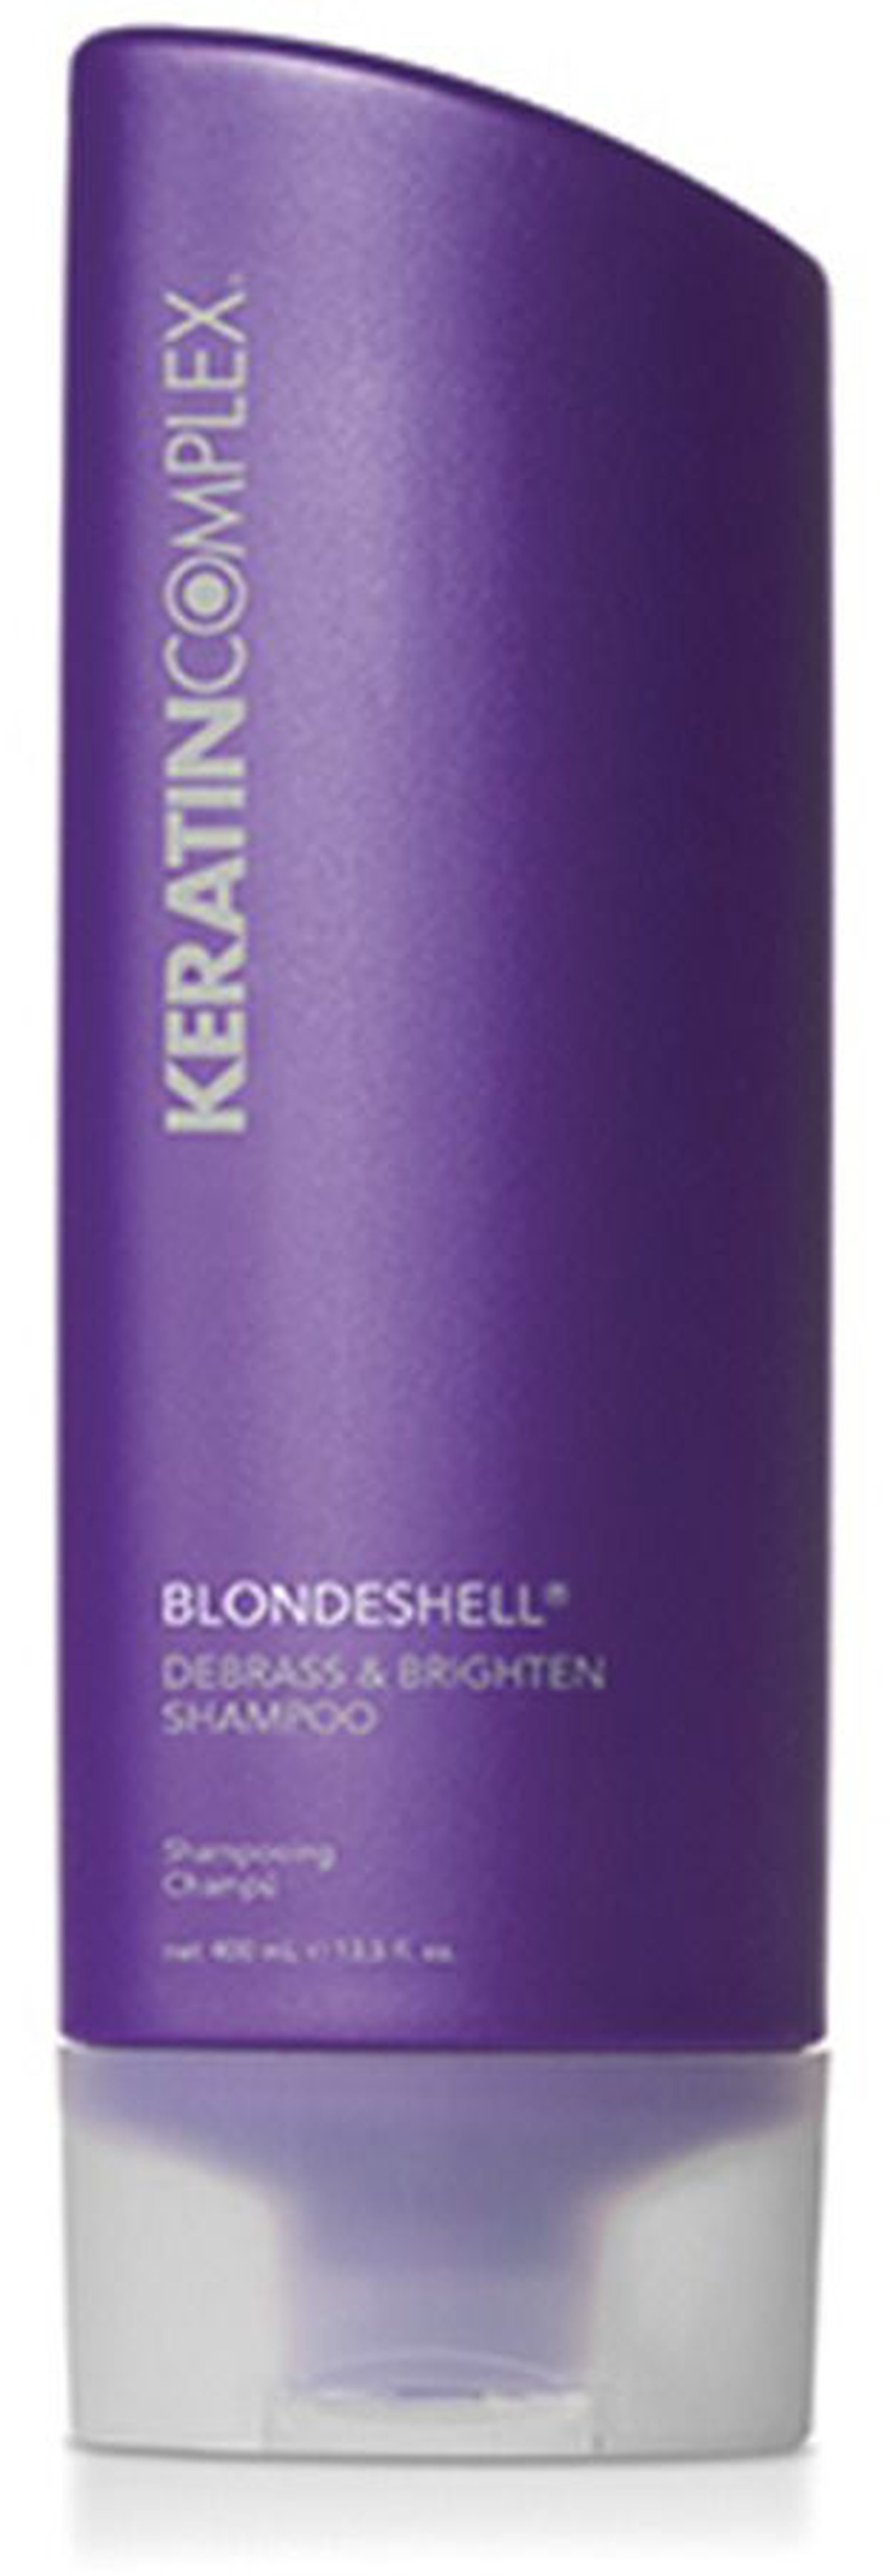 Keratin Complex шампунь корректирующий для осветленных и седых волос Keratin Complex, 400 ml фото